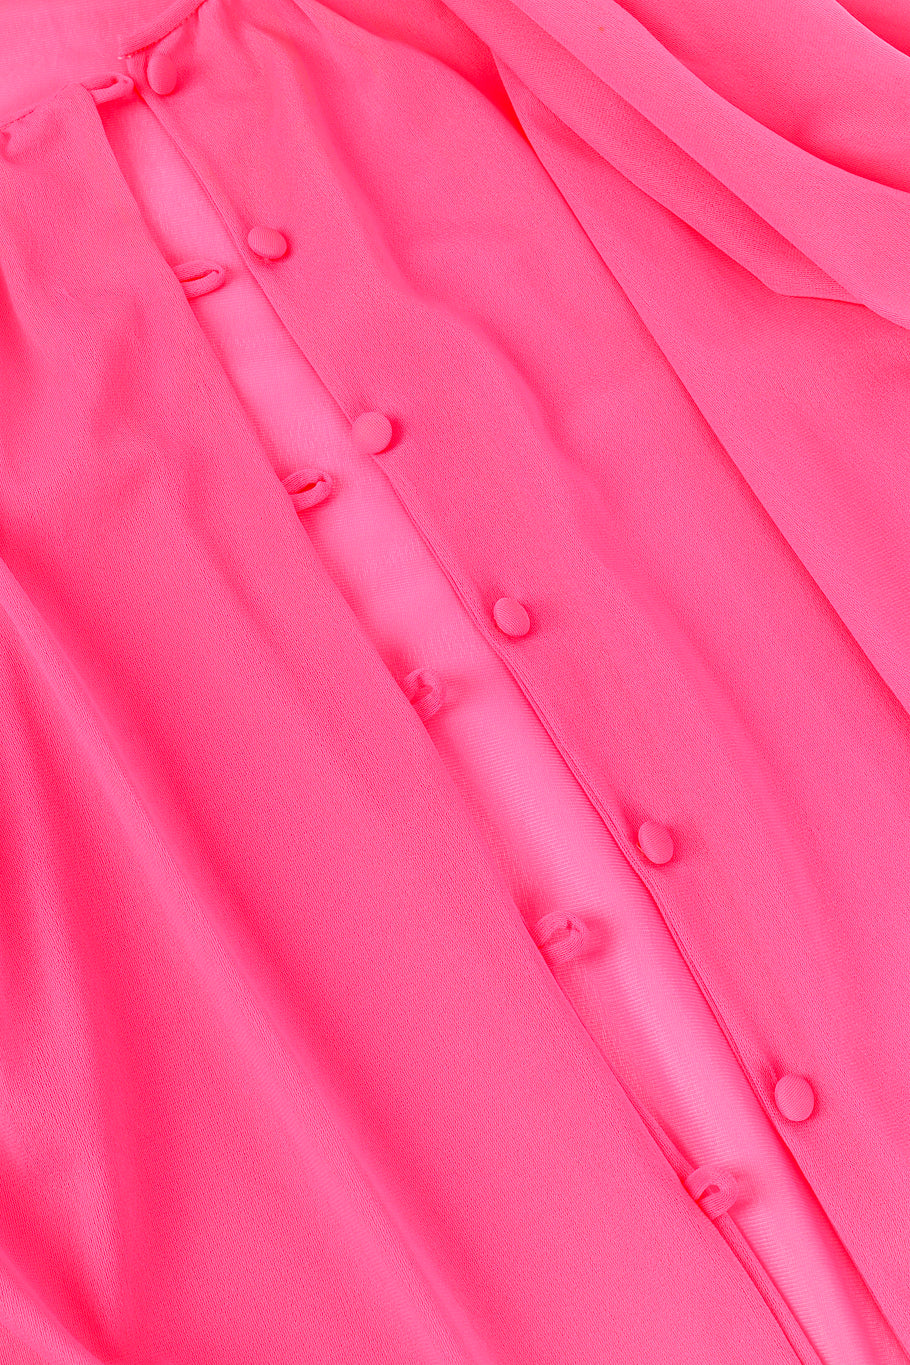 Vintage Flair Marabou Trim Top & Dress Set front button closure @recess la